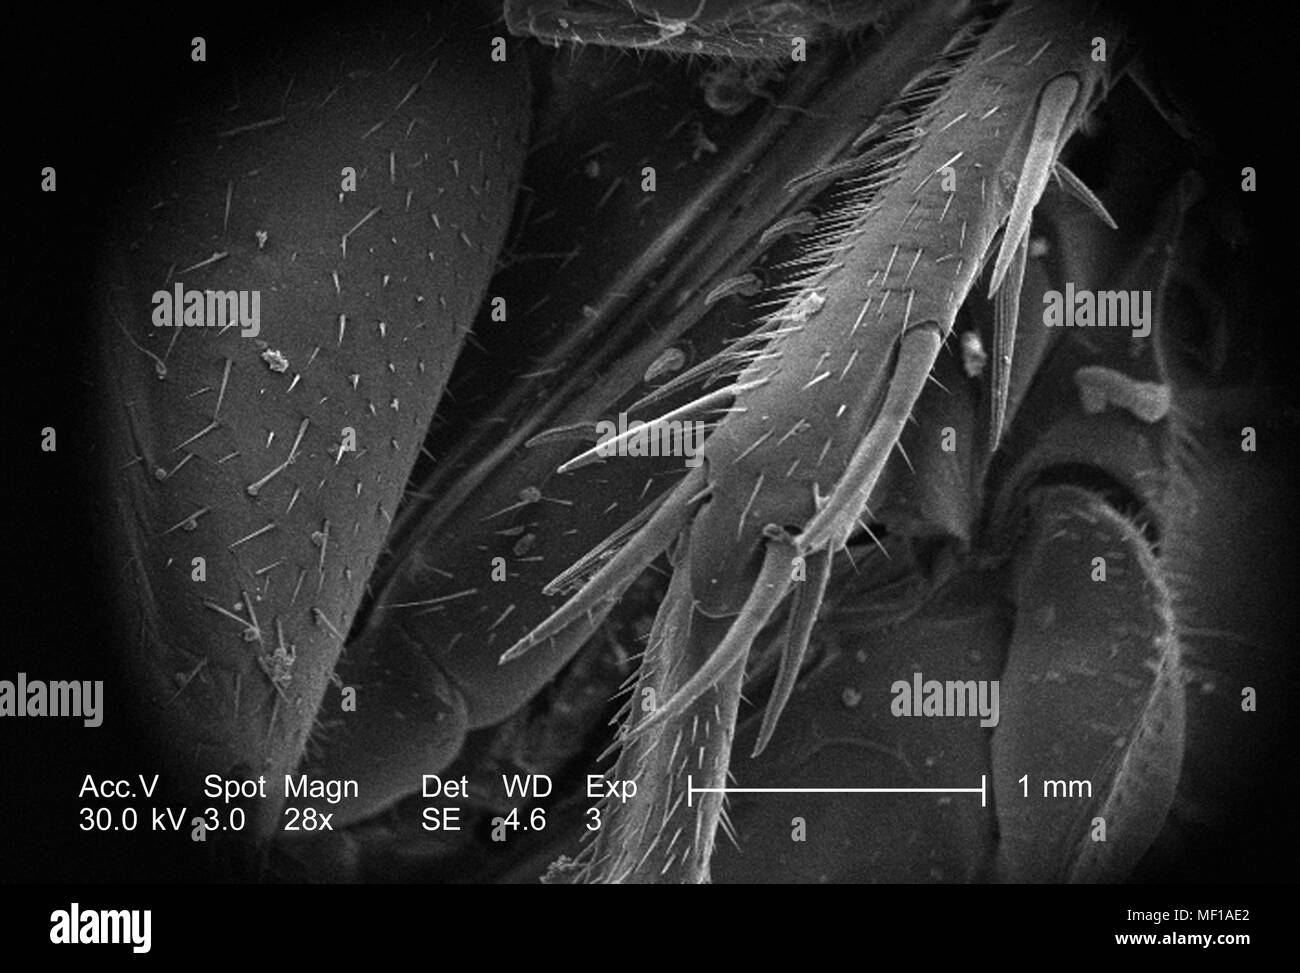 Morfologia anatomica in exoskeletal configurazione di un misterioso roach, raffigurato in 28x di scansione ingrandita al microscopio elettronico (SEM) immagine, 2005. Immagine cortesia di centri per il controllo delle malattie (CDC) / Janice Haney Carr. () Foto Stock